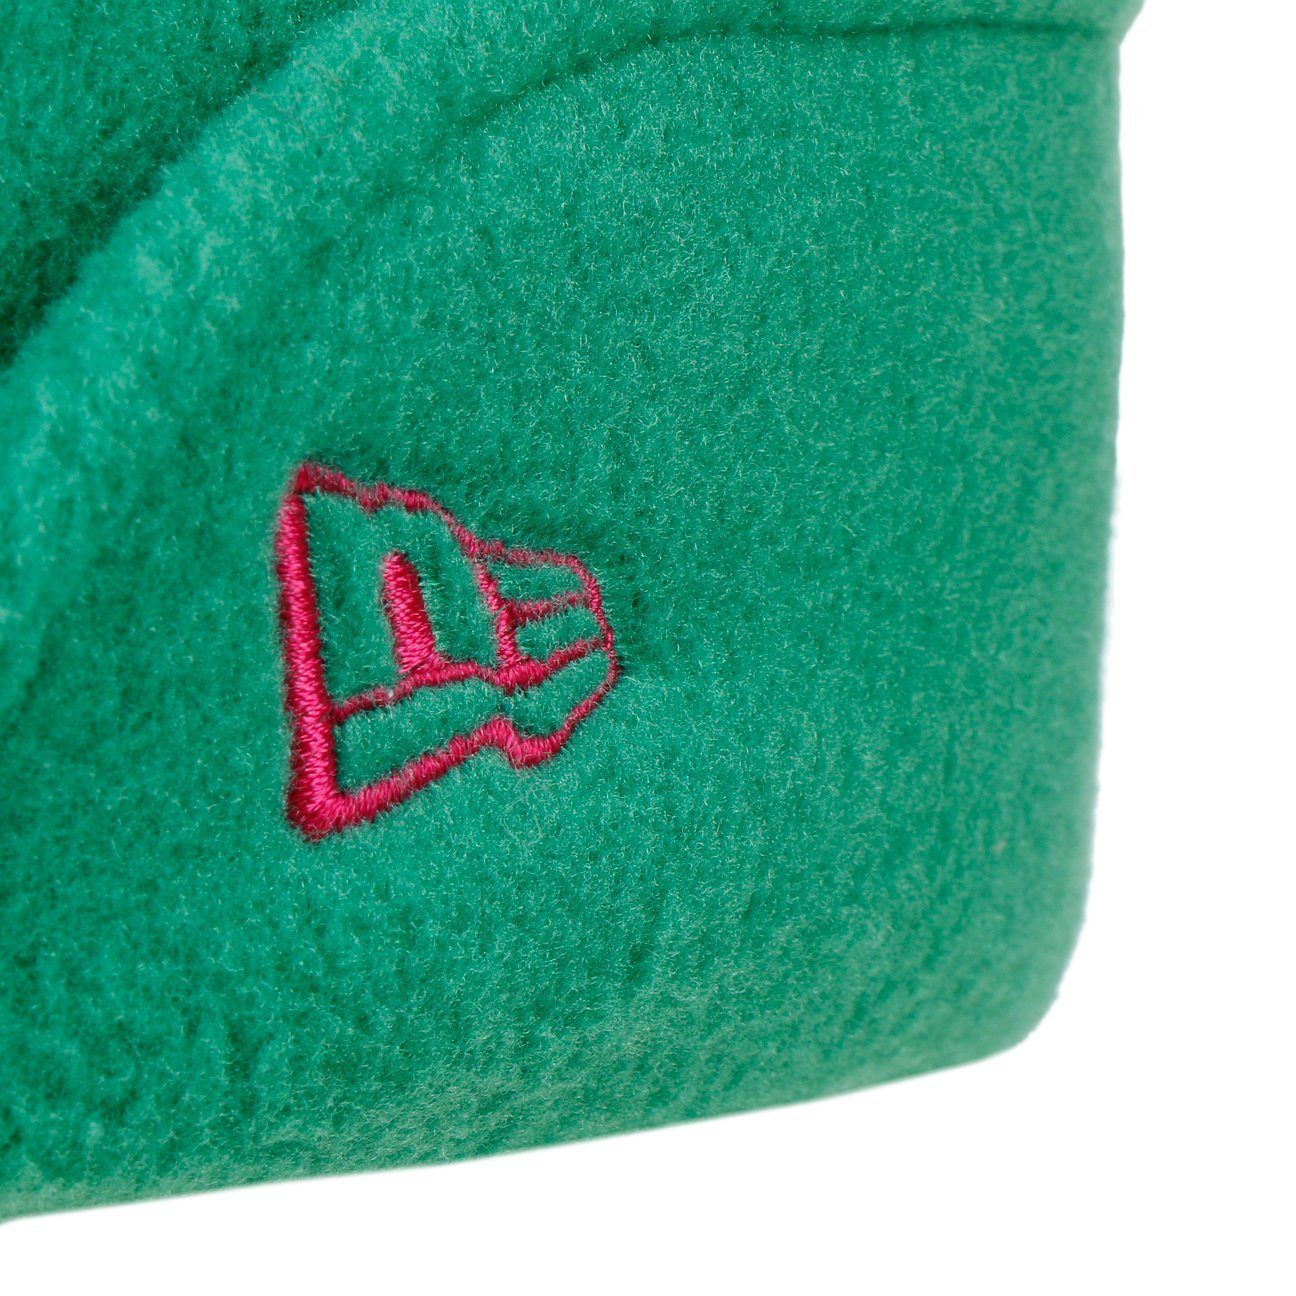 Schirm mit grün Era Baseball Basecap (1-St) New Cap